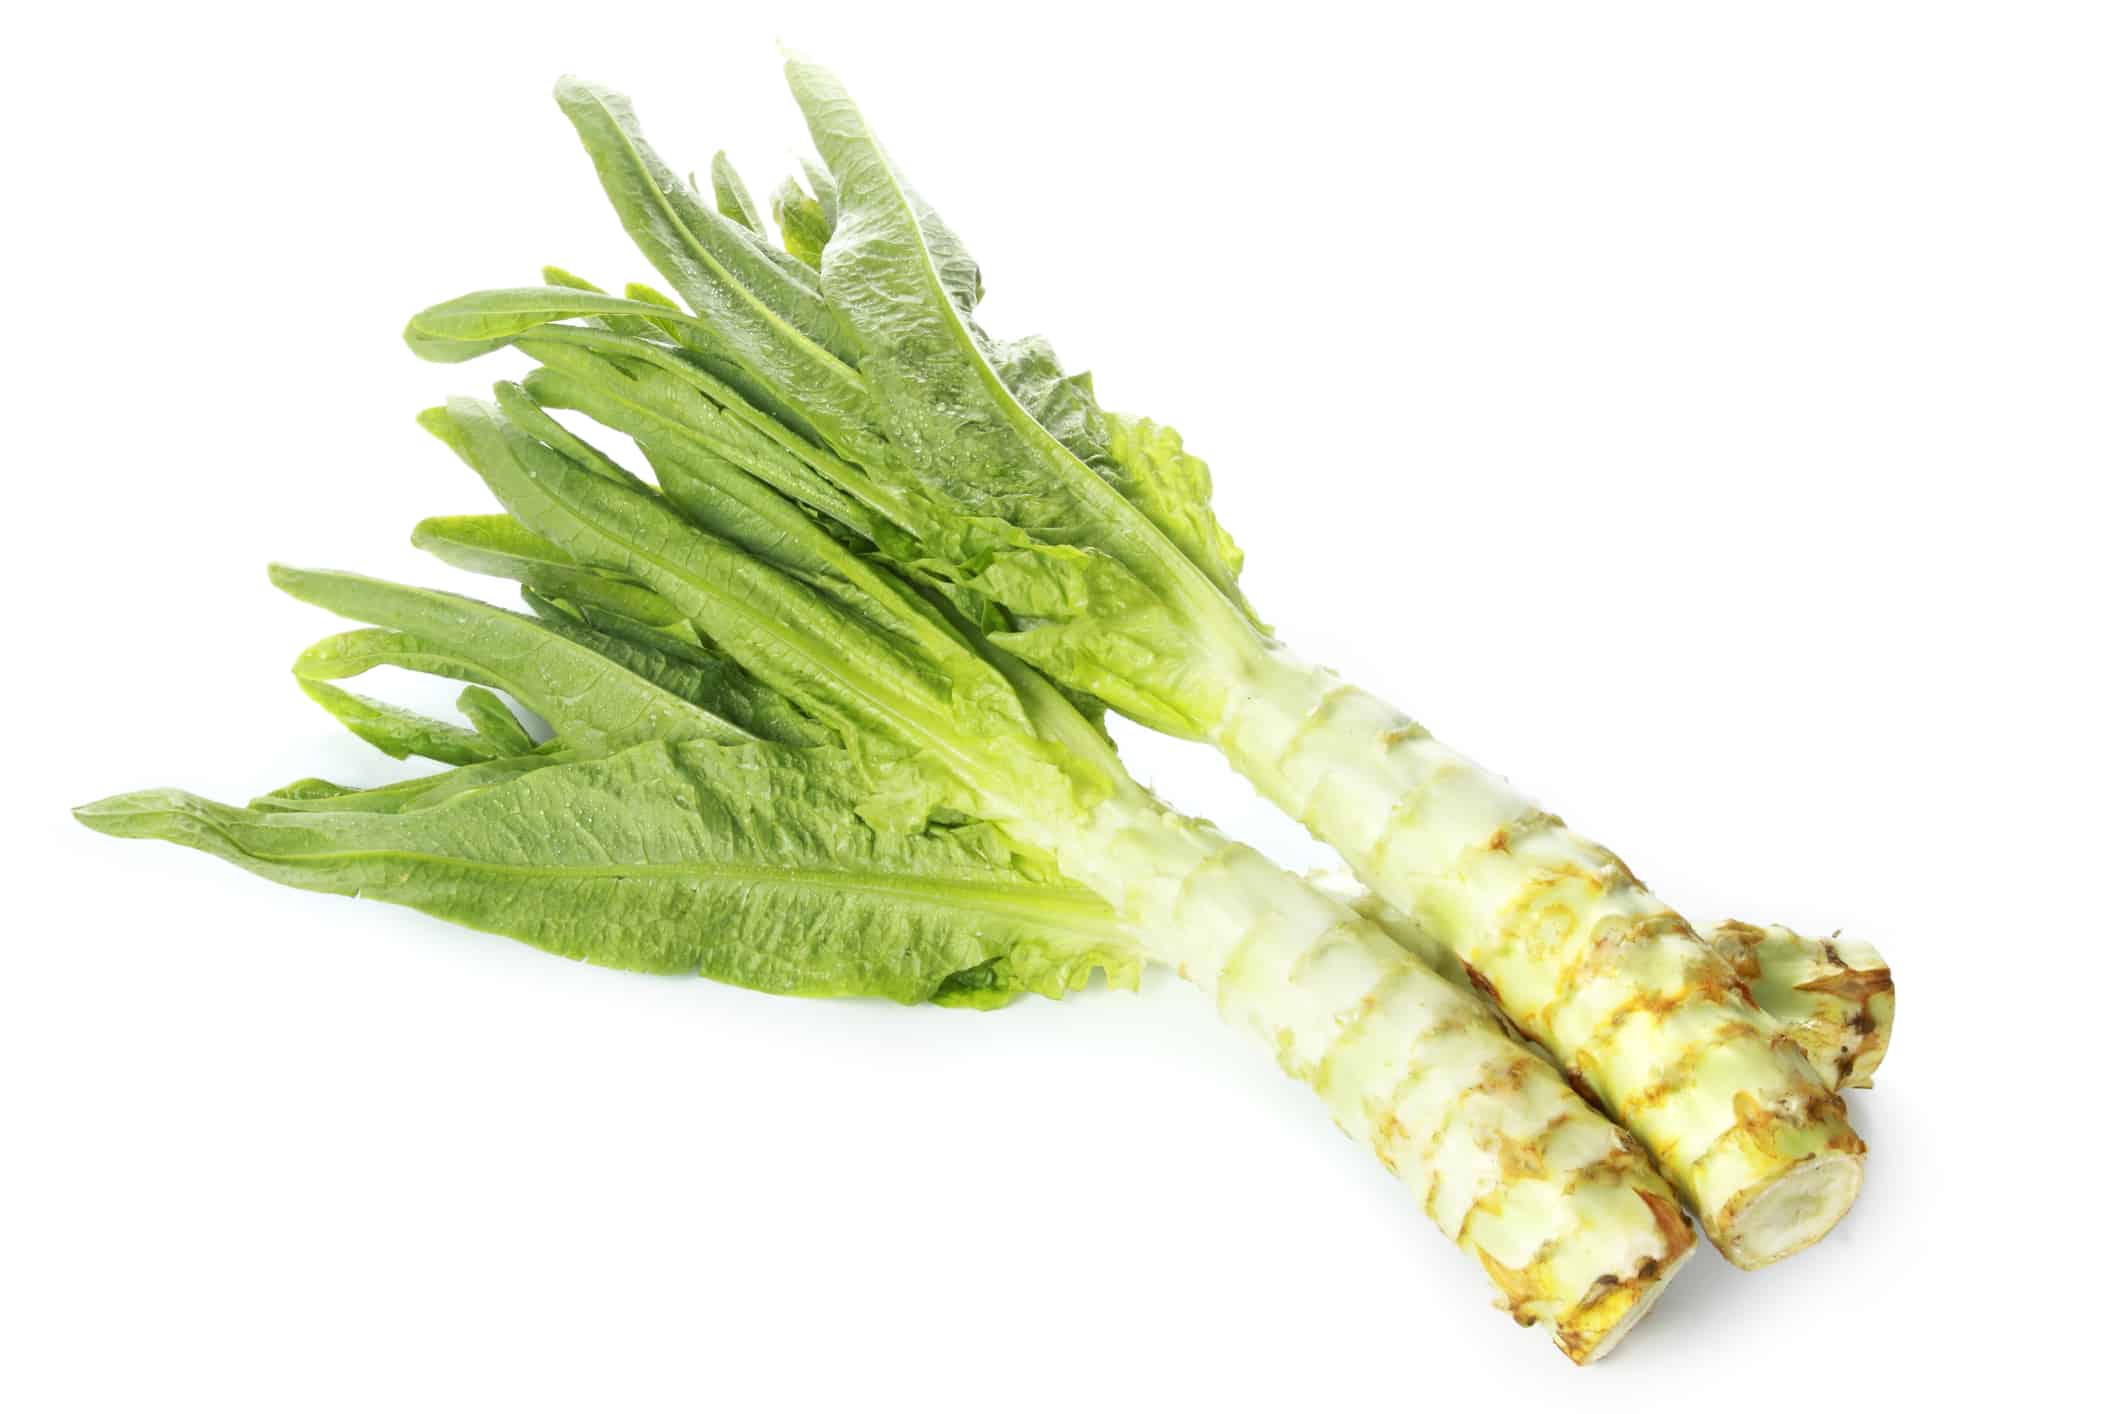 Asparagus lettuce, celery, celtuce vegetables, stems, green leaves isolated on white background